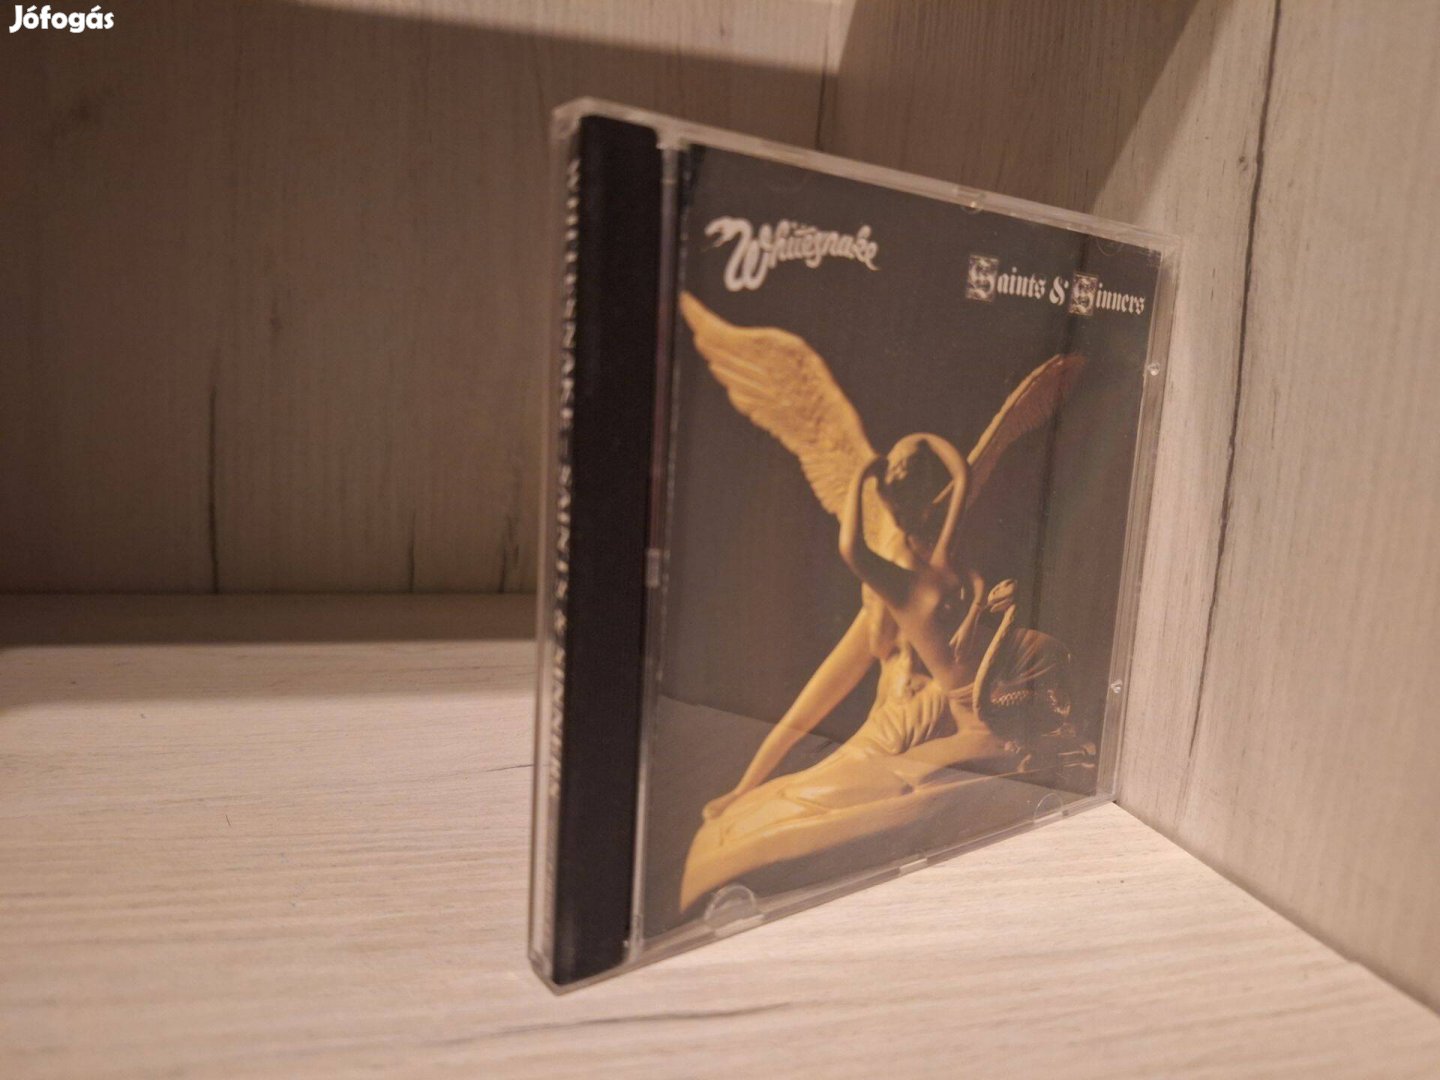 Whitesnake - Saints & Sinners CD